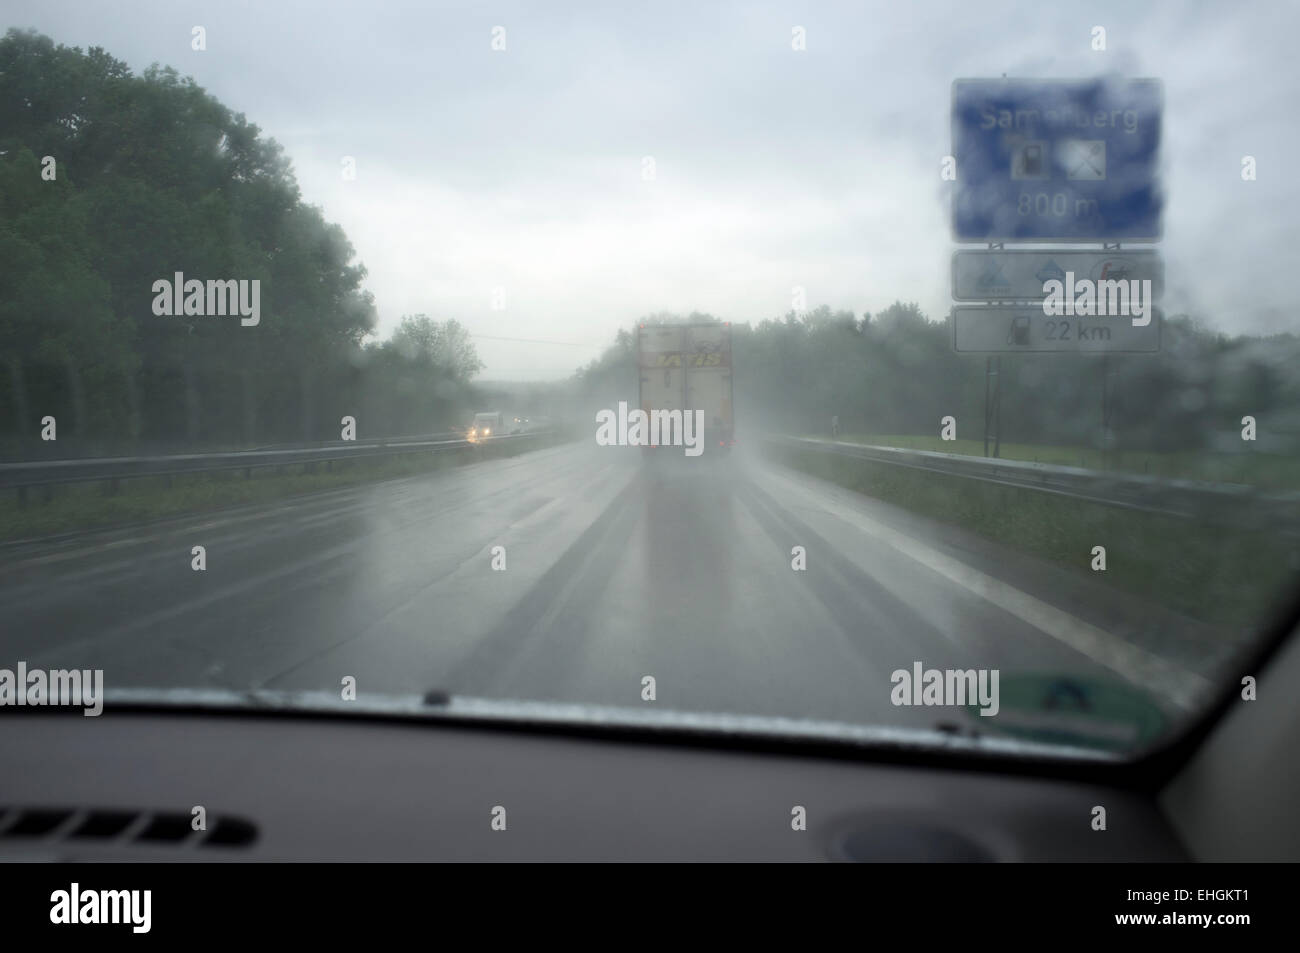 La guida su autostrada in heavy rain, Samerberg, Germania. Foto Stock